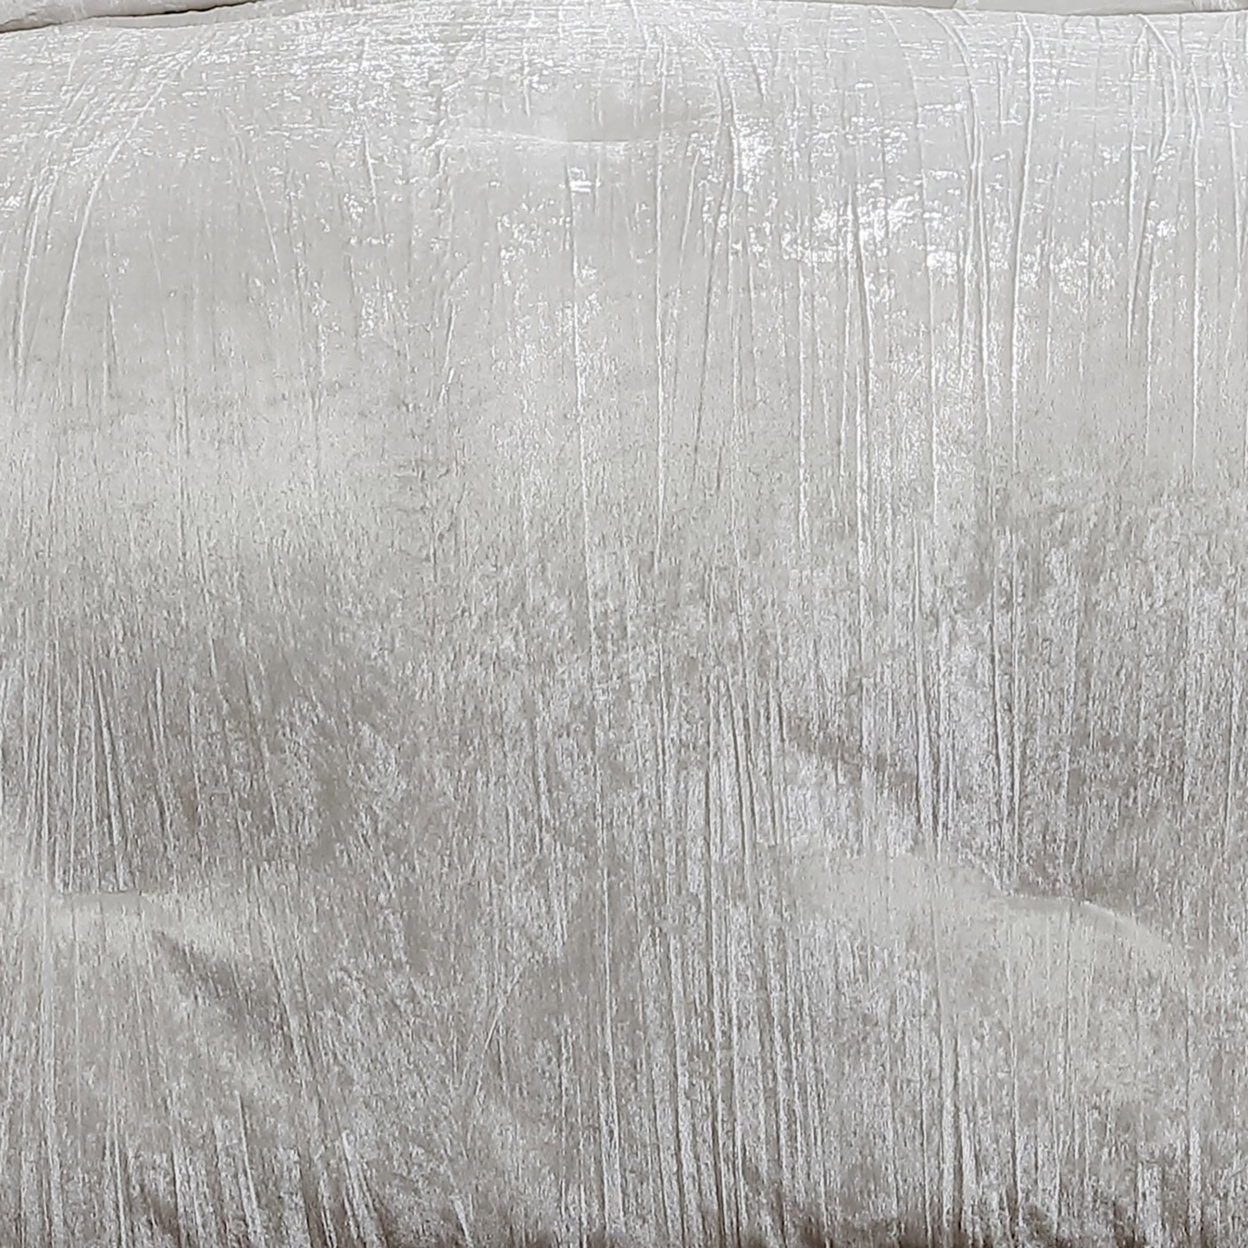 Jay 7 Piece King Comforter Set, Polyester Velvet Deluxe Texture, White- Saltoro Sherpi